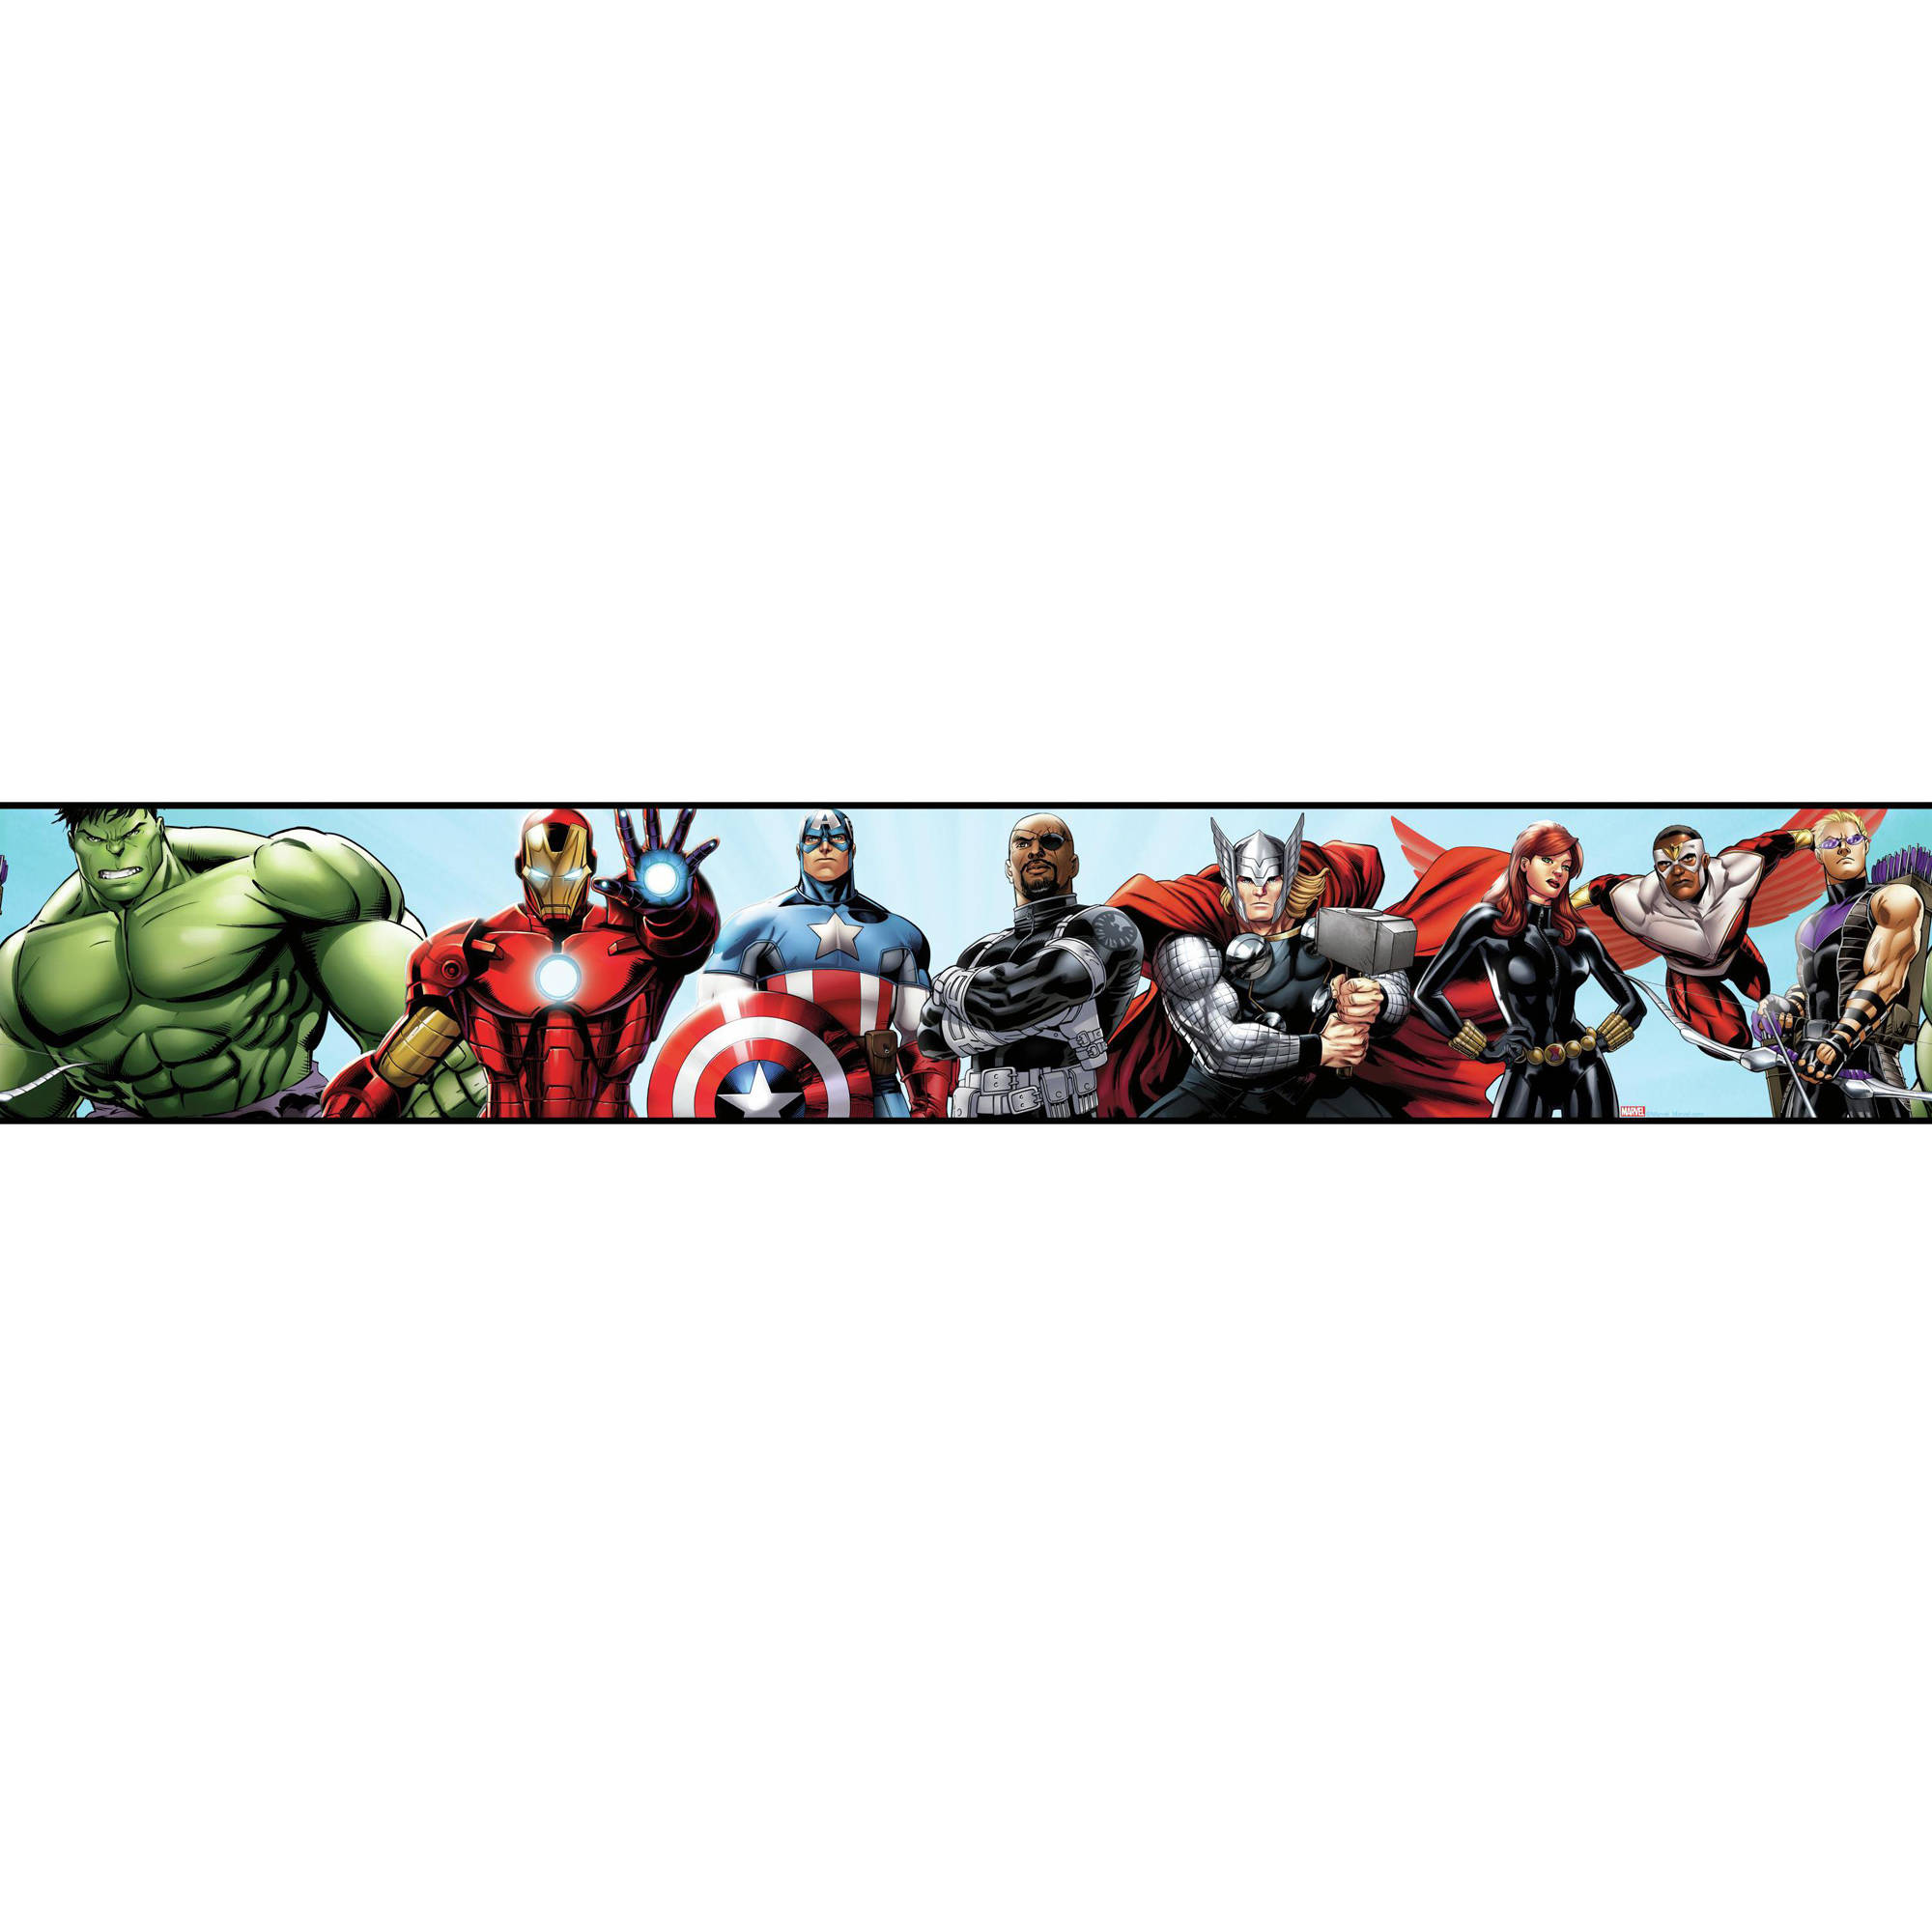 Avengers Wallpaper Border - Avengers Border , HD Wallpaper & Backgrounds